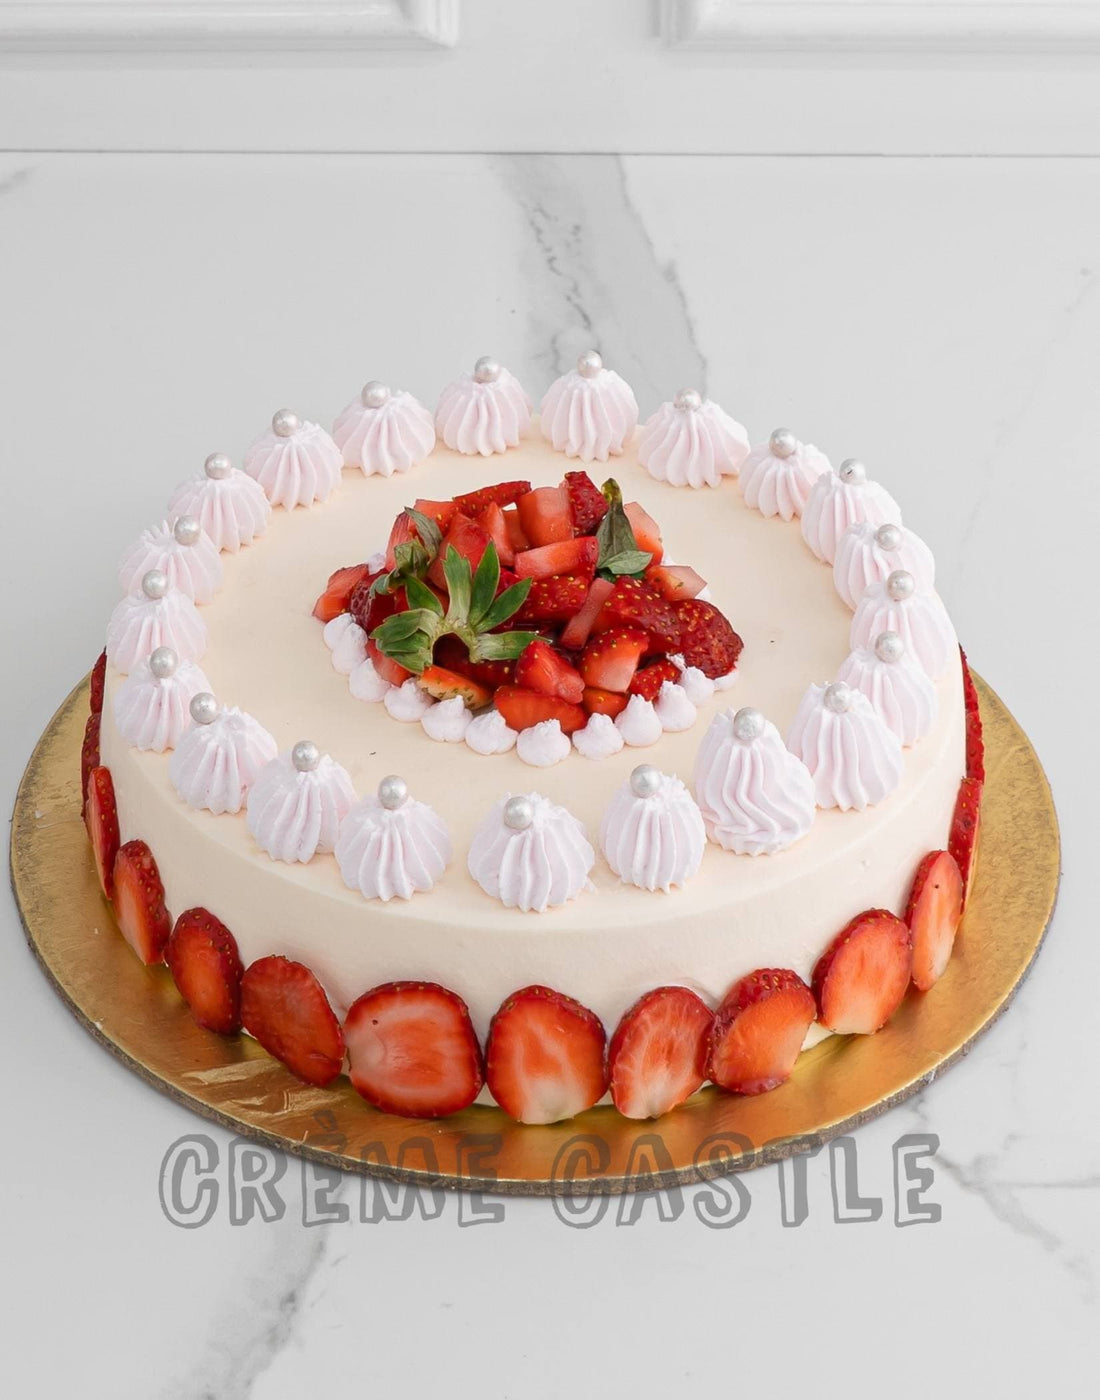 Strawberry Frasier Cake